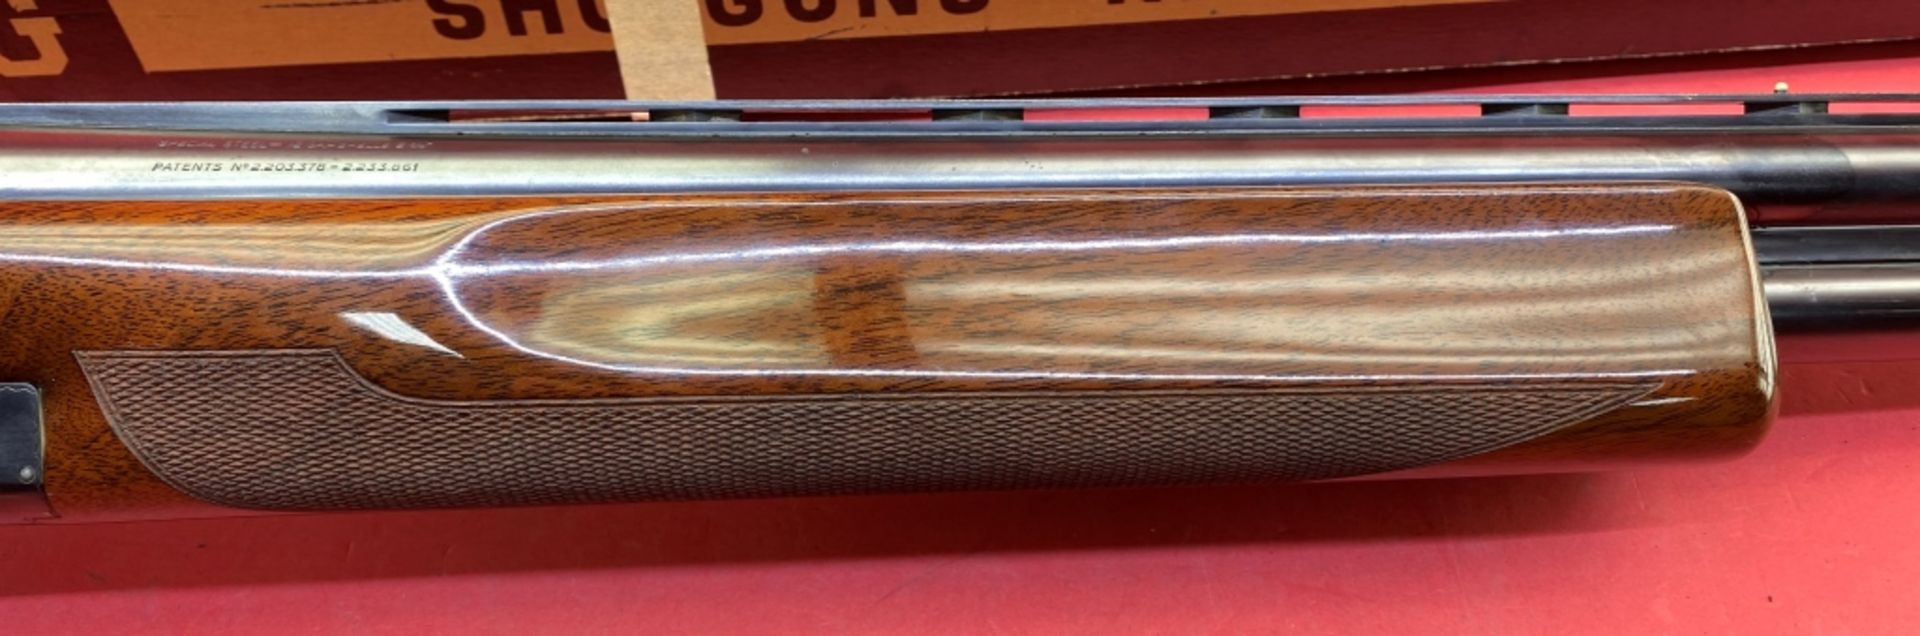 Browning Superposed 12 ga Shotgun - Image 5 of 16